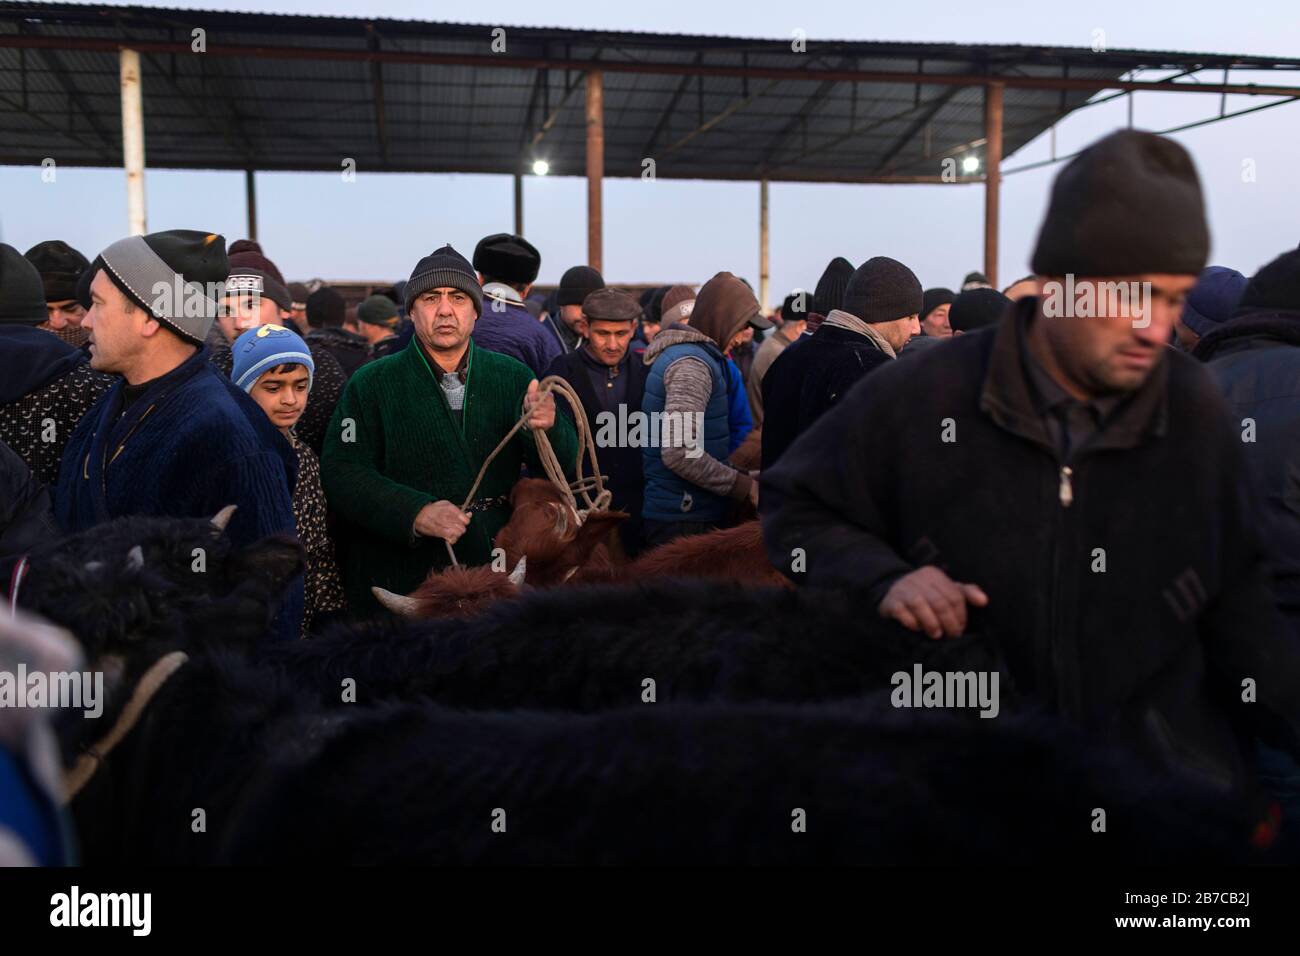 Scène sur le marché du bétail du matin dans un village près de Boukhara, Ouzbékistan Banque D'Images